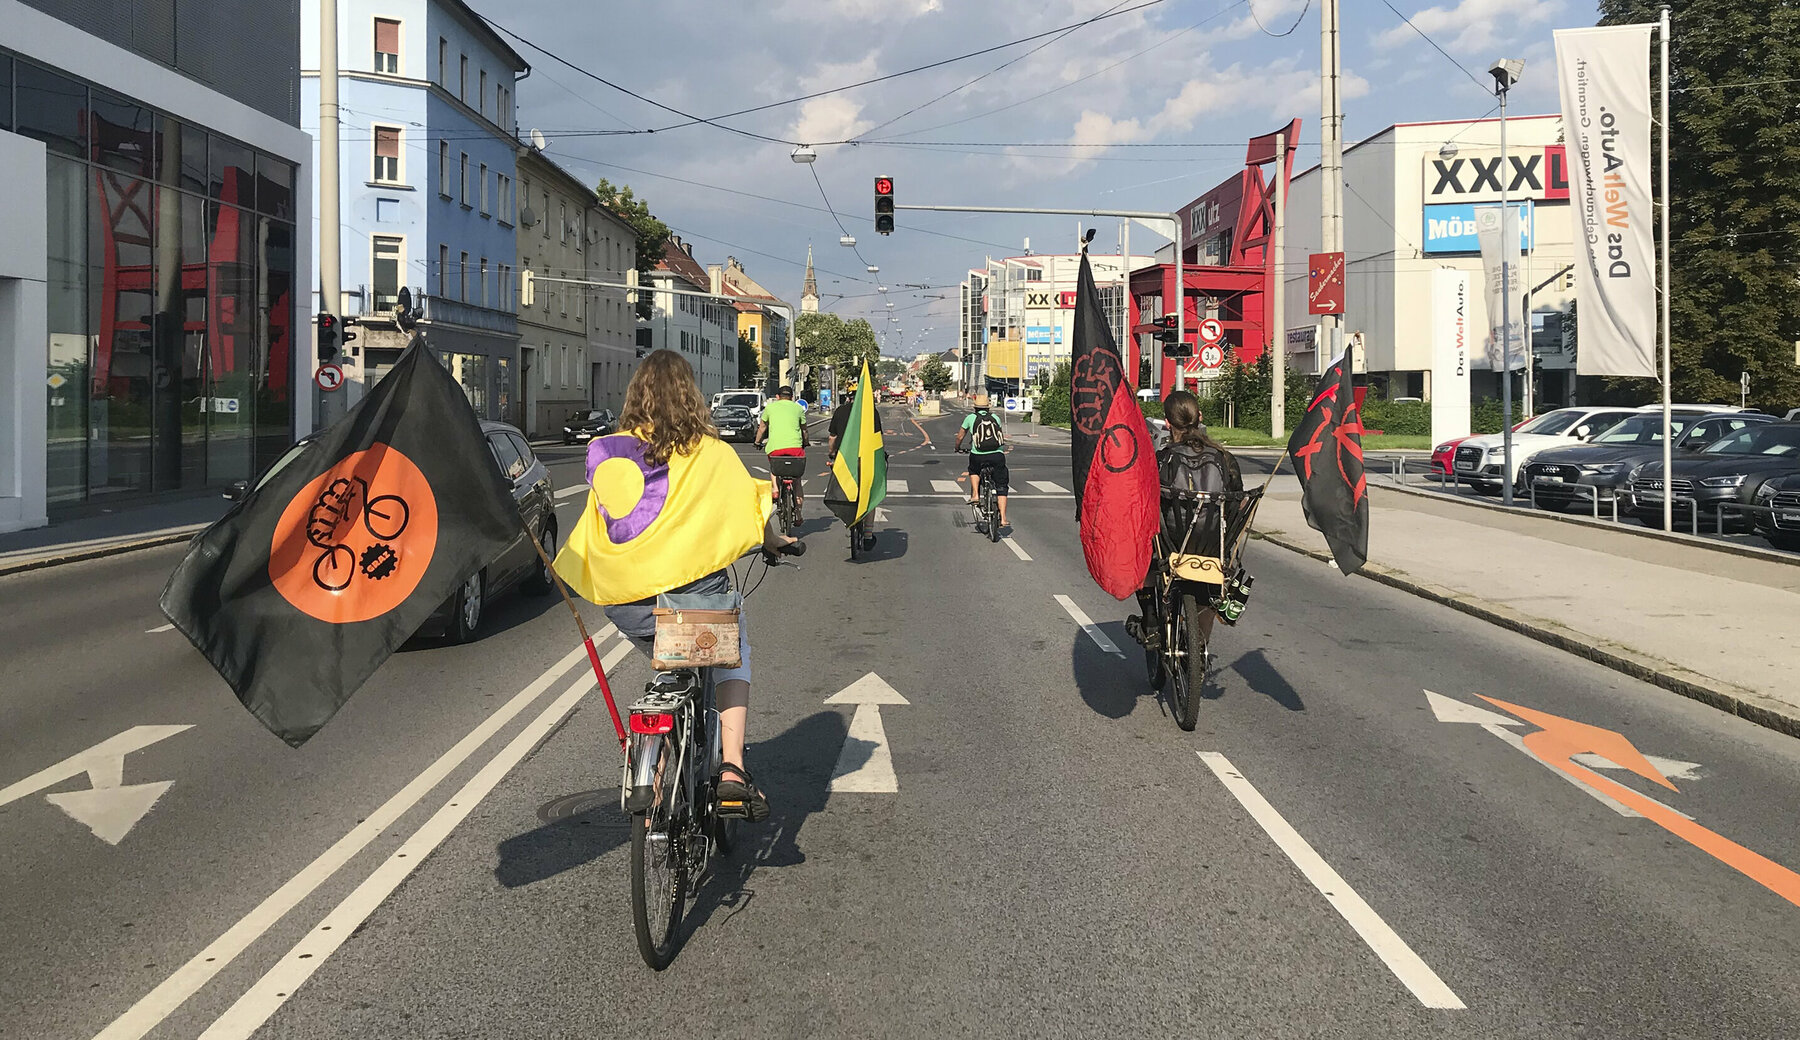 Teilnehmerinnen des Critical Mass fahren mit ihren Fahrrädern auf der Straße. Sie sind dabei mit Flaggen geschmückt und nehmen die gesamte Straße ein.